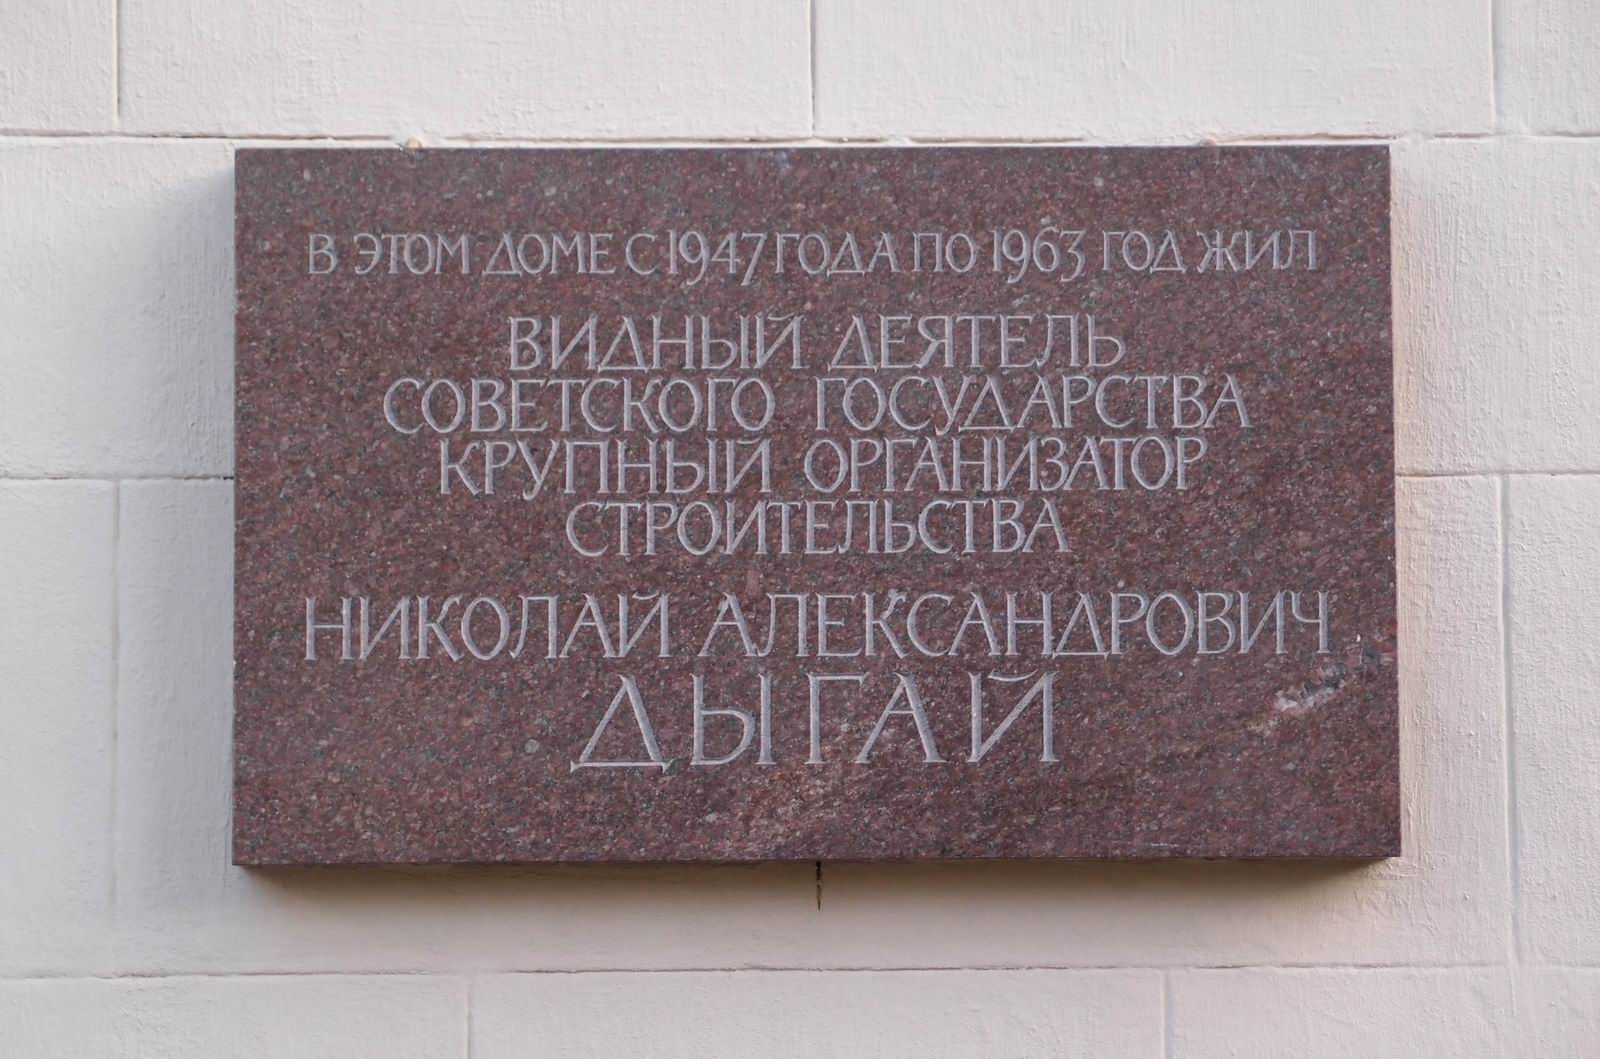 Мемориальная доска Дыгаю Н.А. (1908–1963), арх. С.И.Смирнов, в Большом Лёвшинском переулке, дом 9, открыта 18.6.1974.